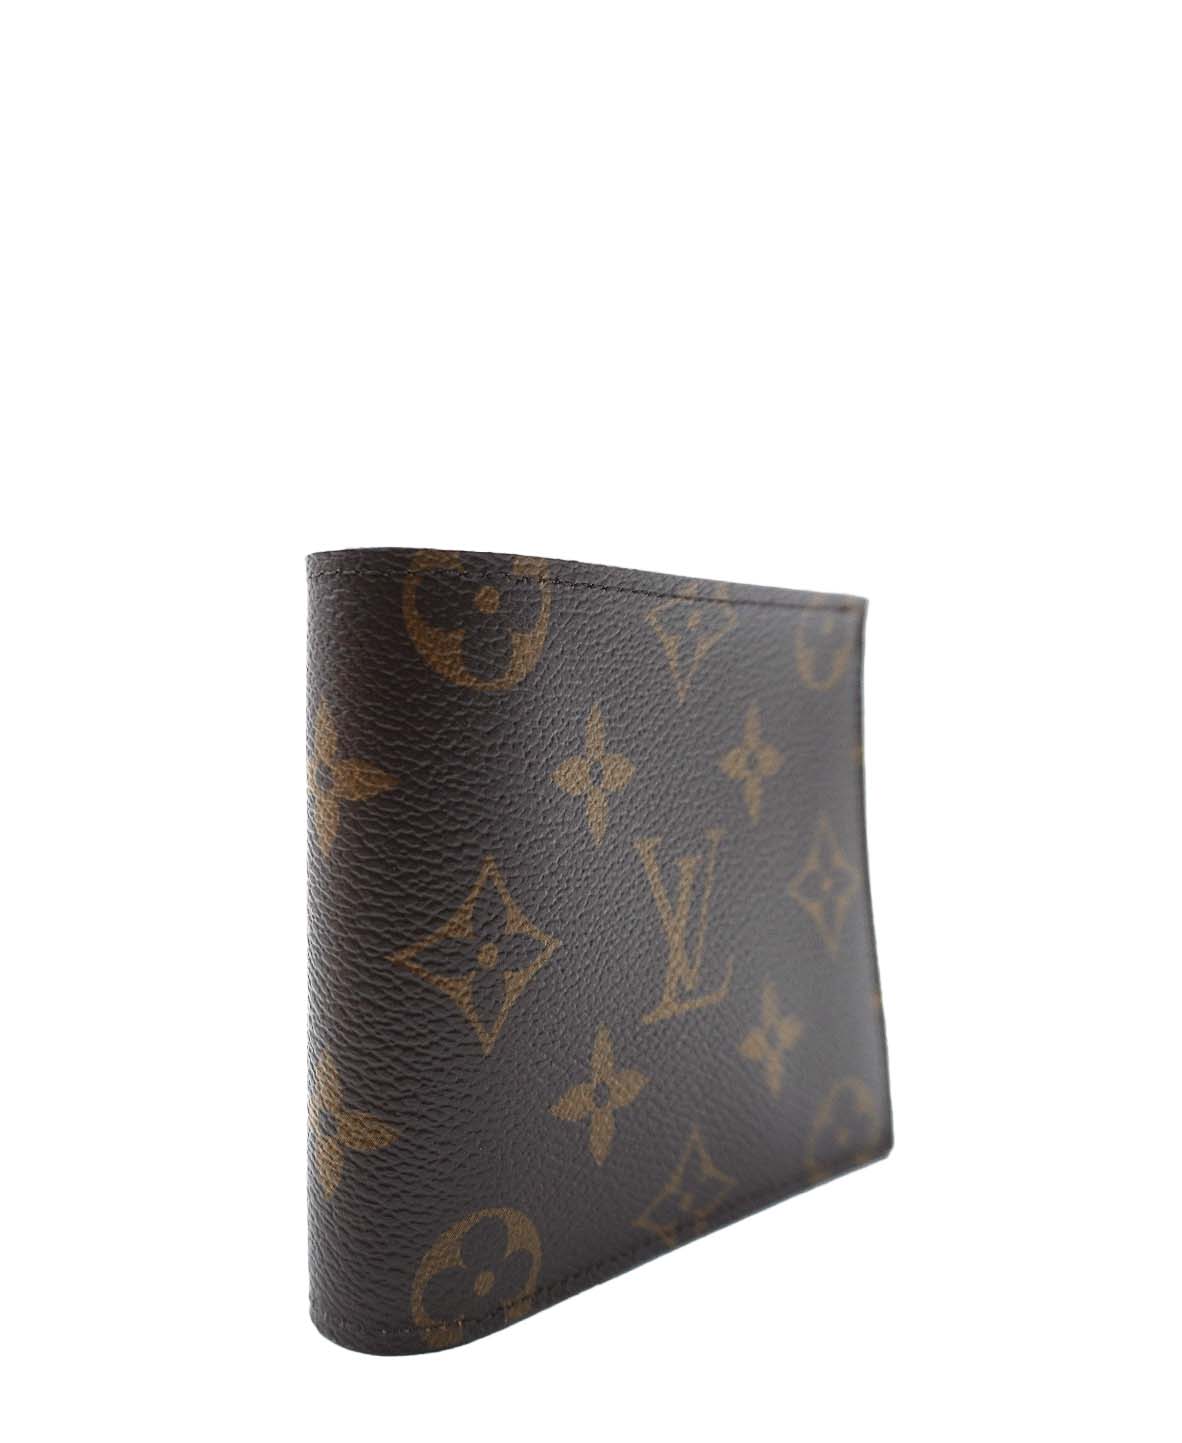 Shopbop Archive Louis Vuitton Marco Wallet, Monogram